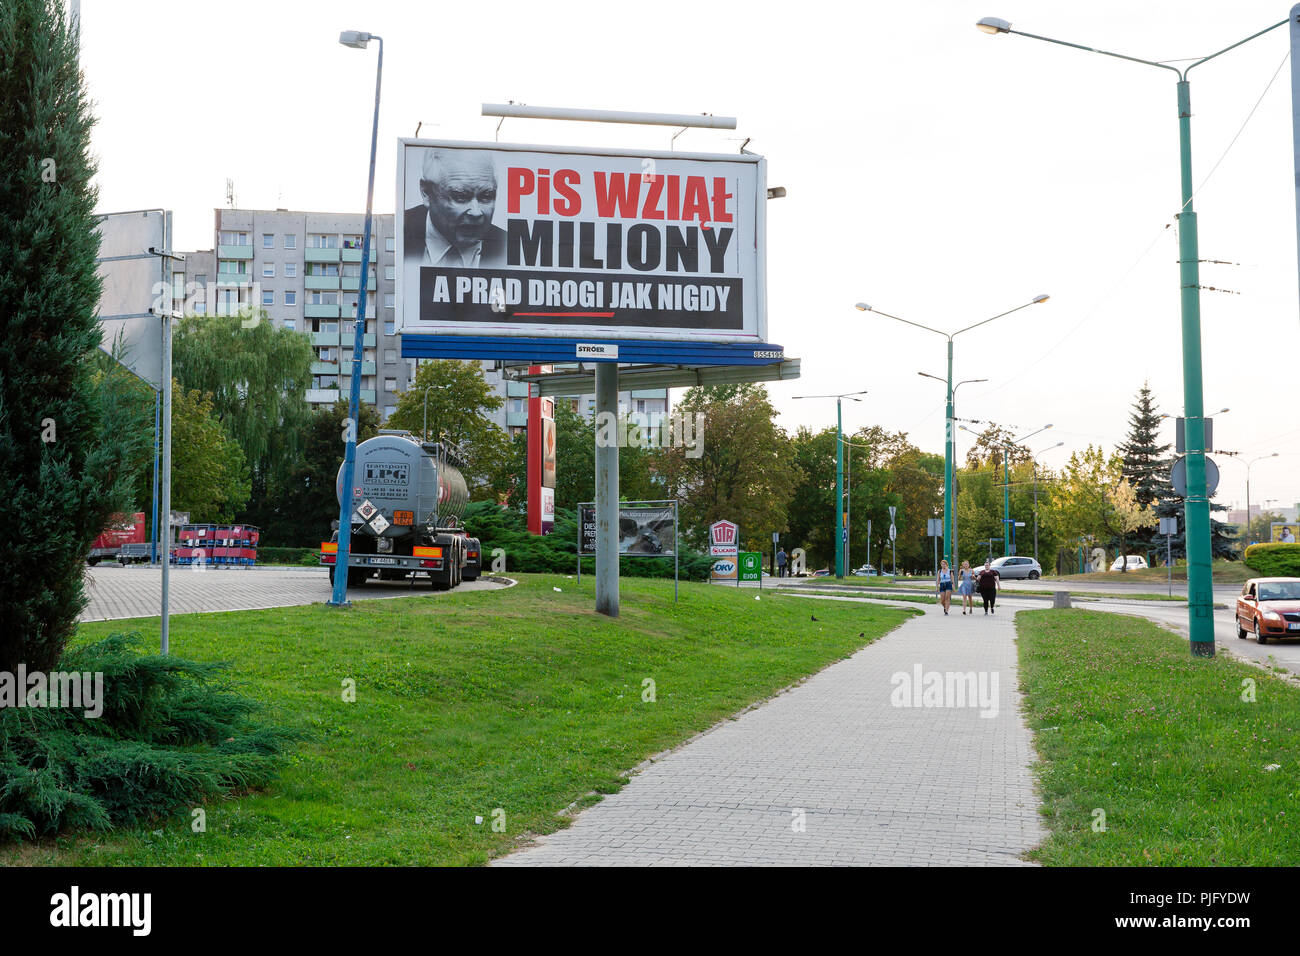 Reklametafeln kritisiert die derzeit herrschenden in Polen politische Partei PiS (Recht und Gerechtigkeit) mit Gesicht der Vorsitzende Jaroslaw Kaczynski. Tychy, Polen Stockfoto